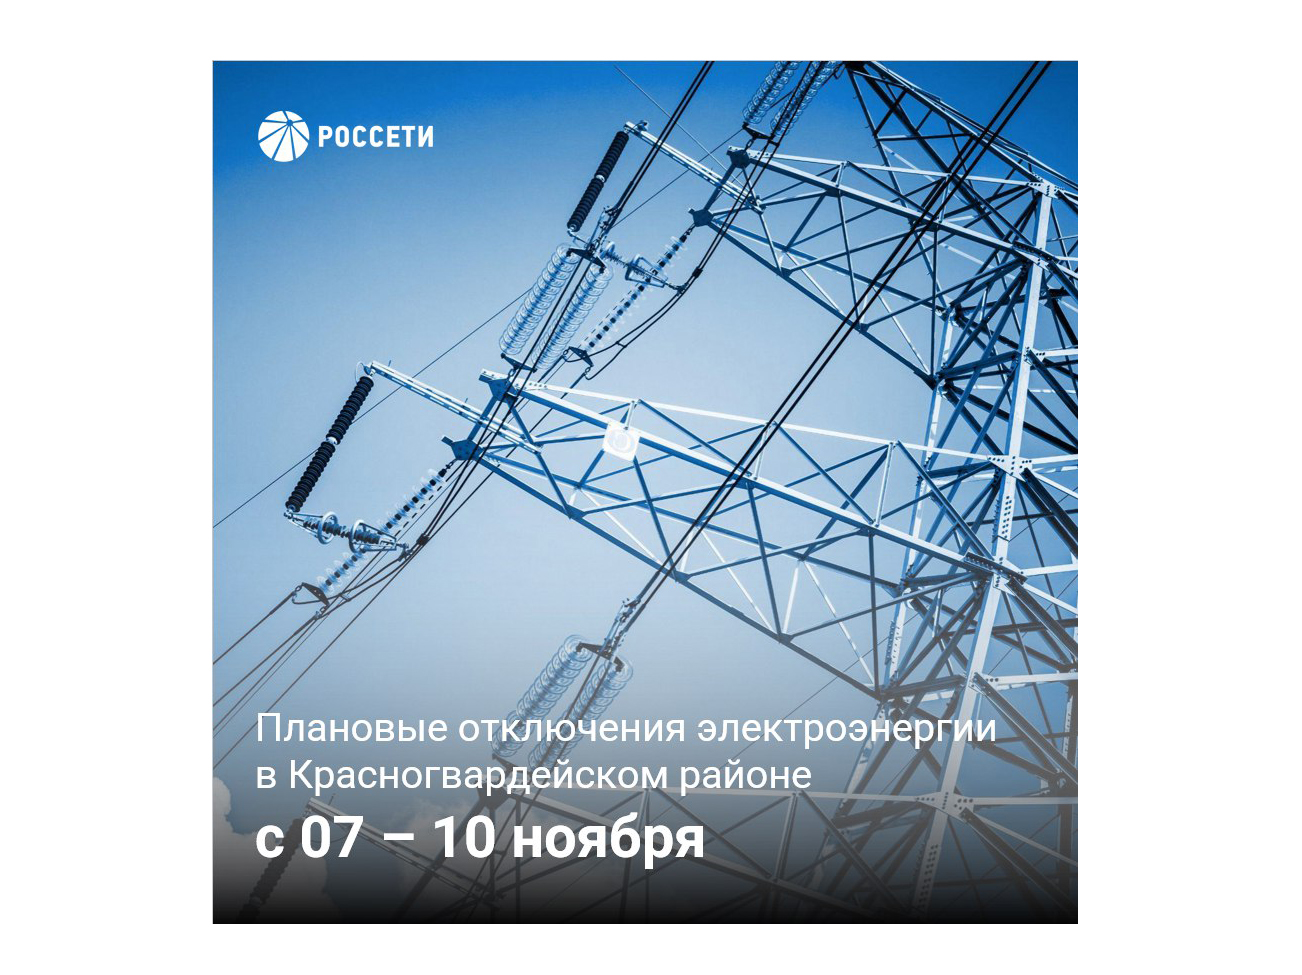 Плановые отключения электроэнергии в Красногвардейском районе с 07 - 10 ноября.